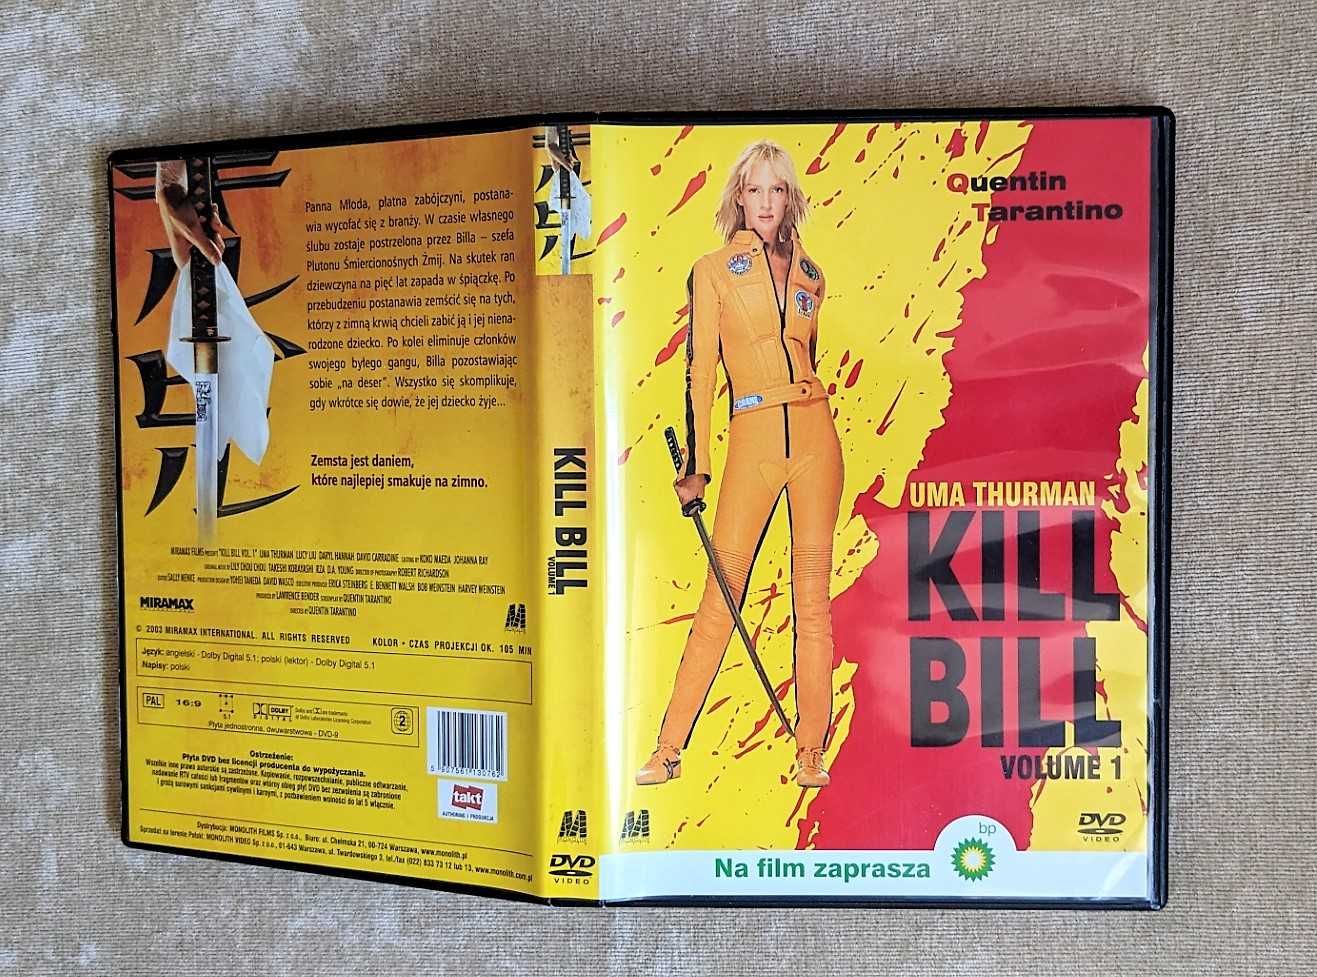 Quentin Tarantino „Kill Bill” volume 1, film DVD